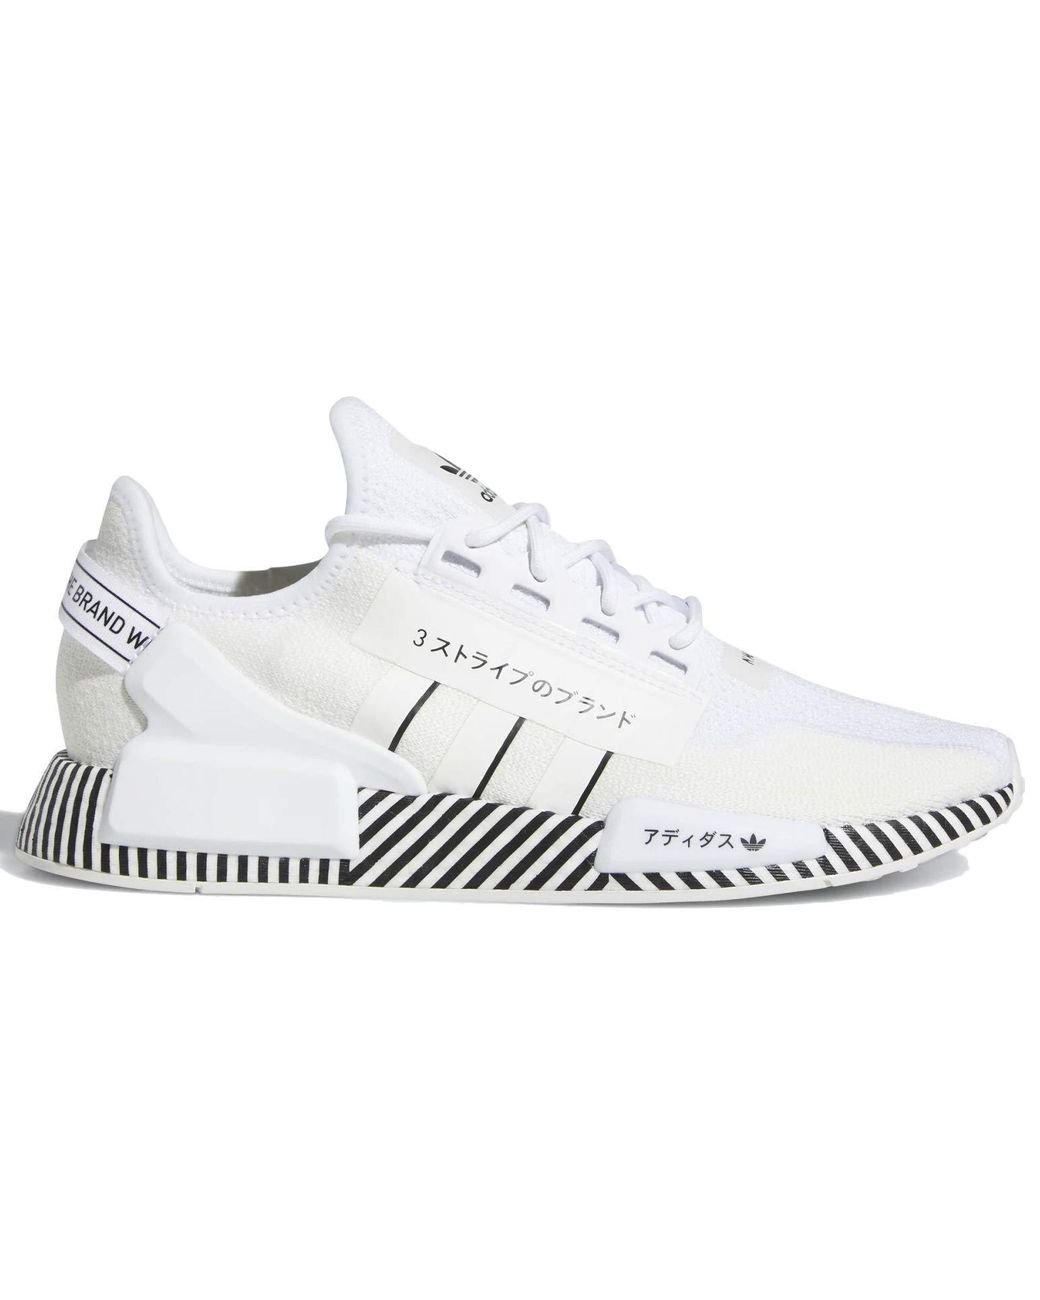 adidas Originals NMD R1 V2 s Casual Running Shoe Fy2105 Size 8.5 White/Black /White für Herren | Lyst DE